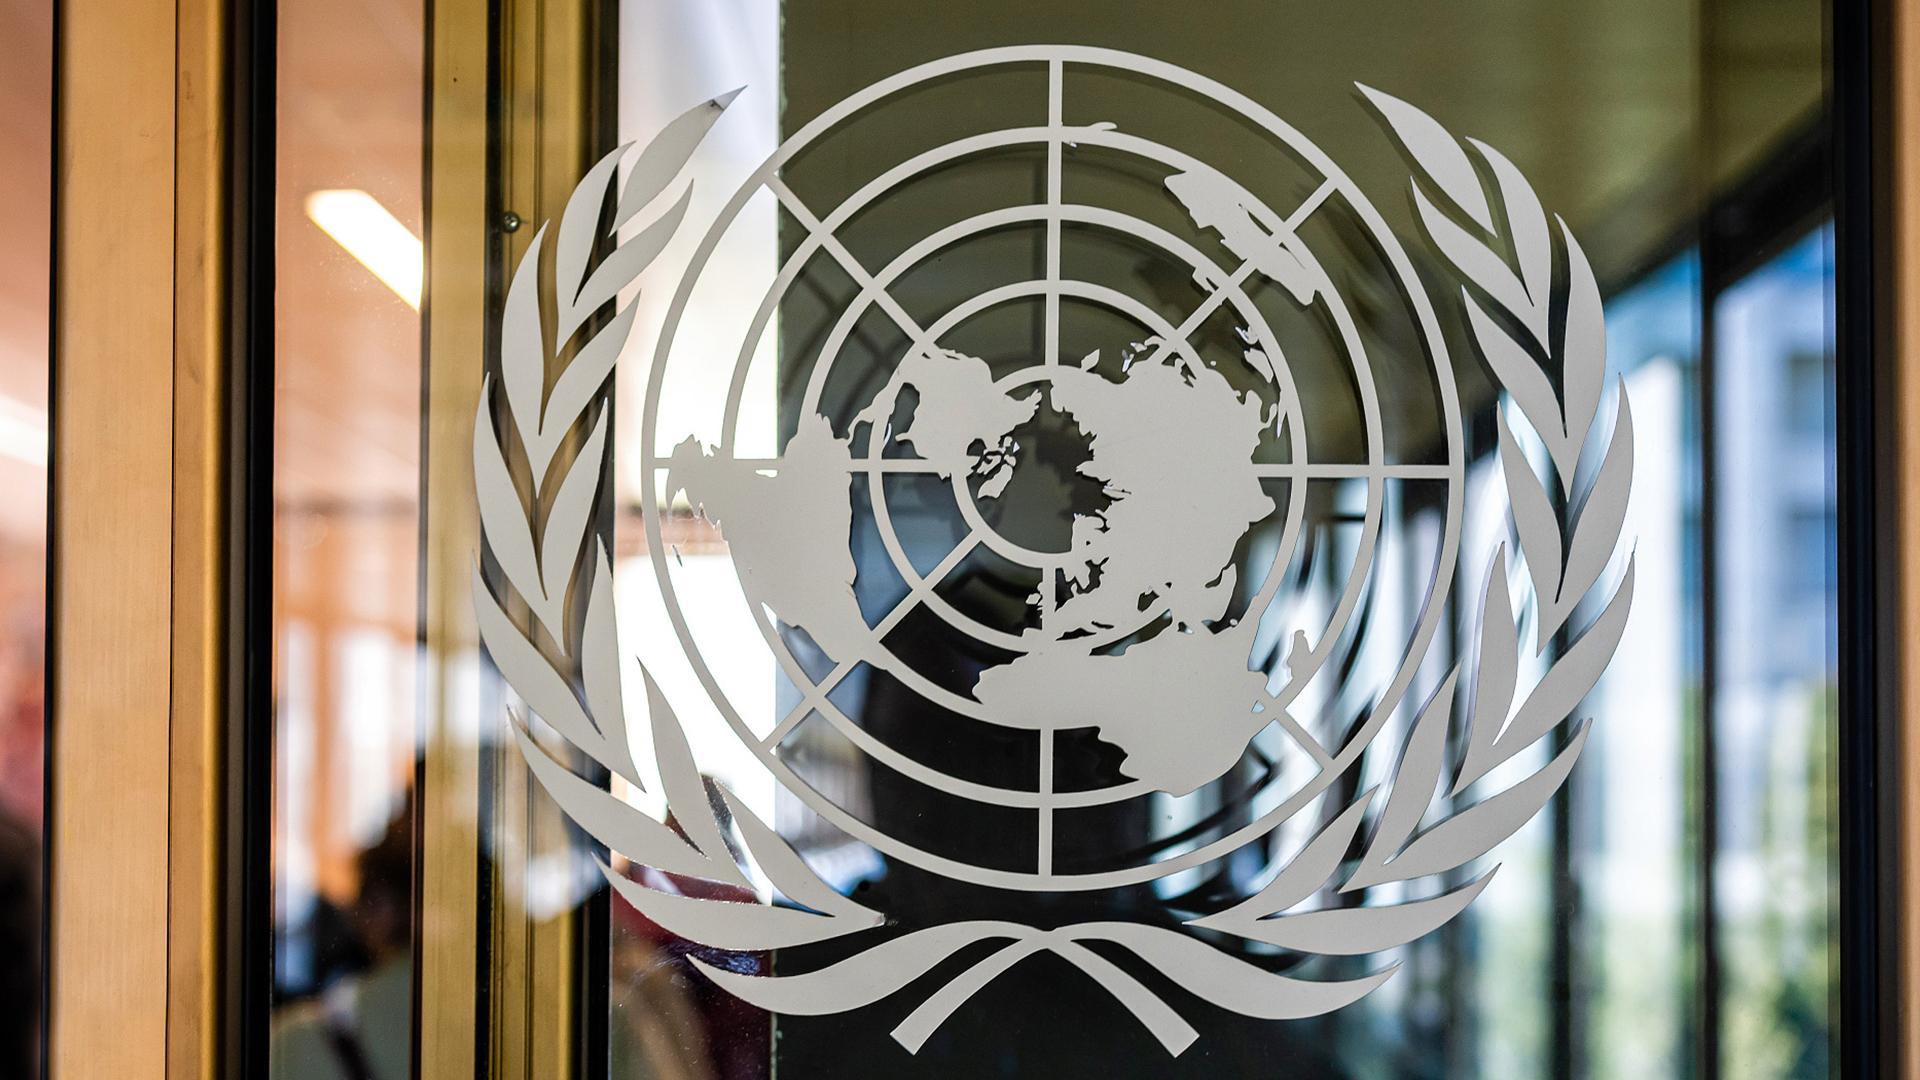 ООН превратилась в «дипломатическое казино, где заправляют западные воротилы» – Лукашенко